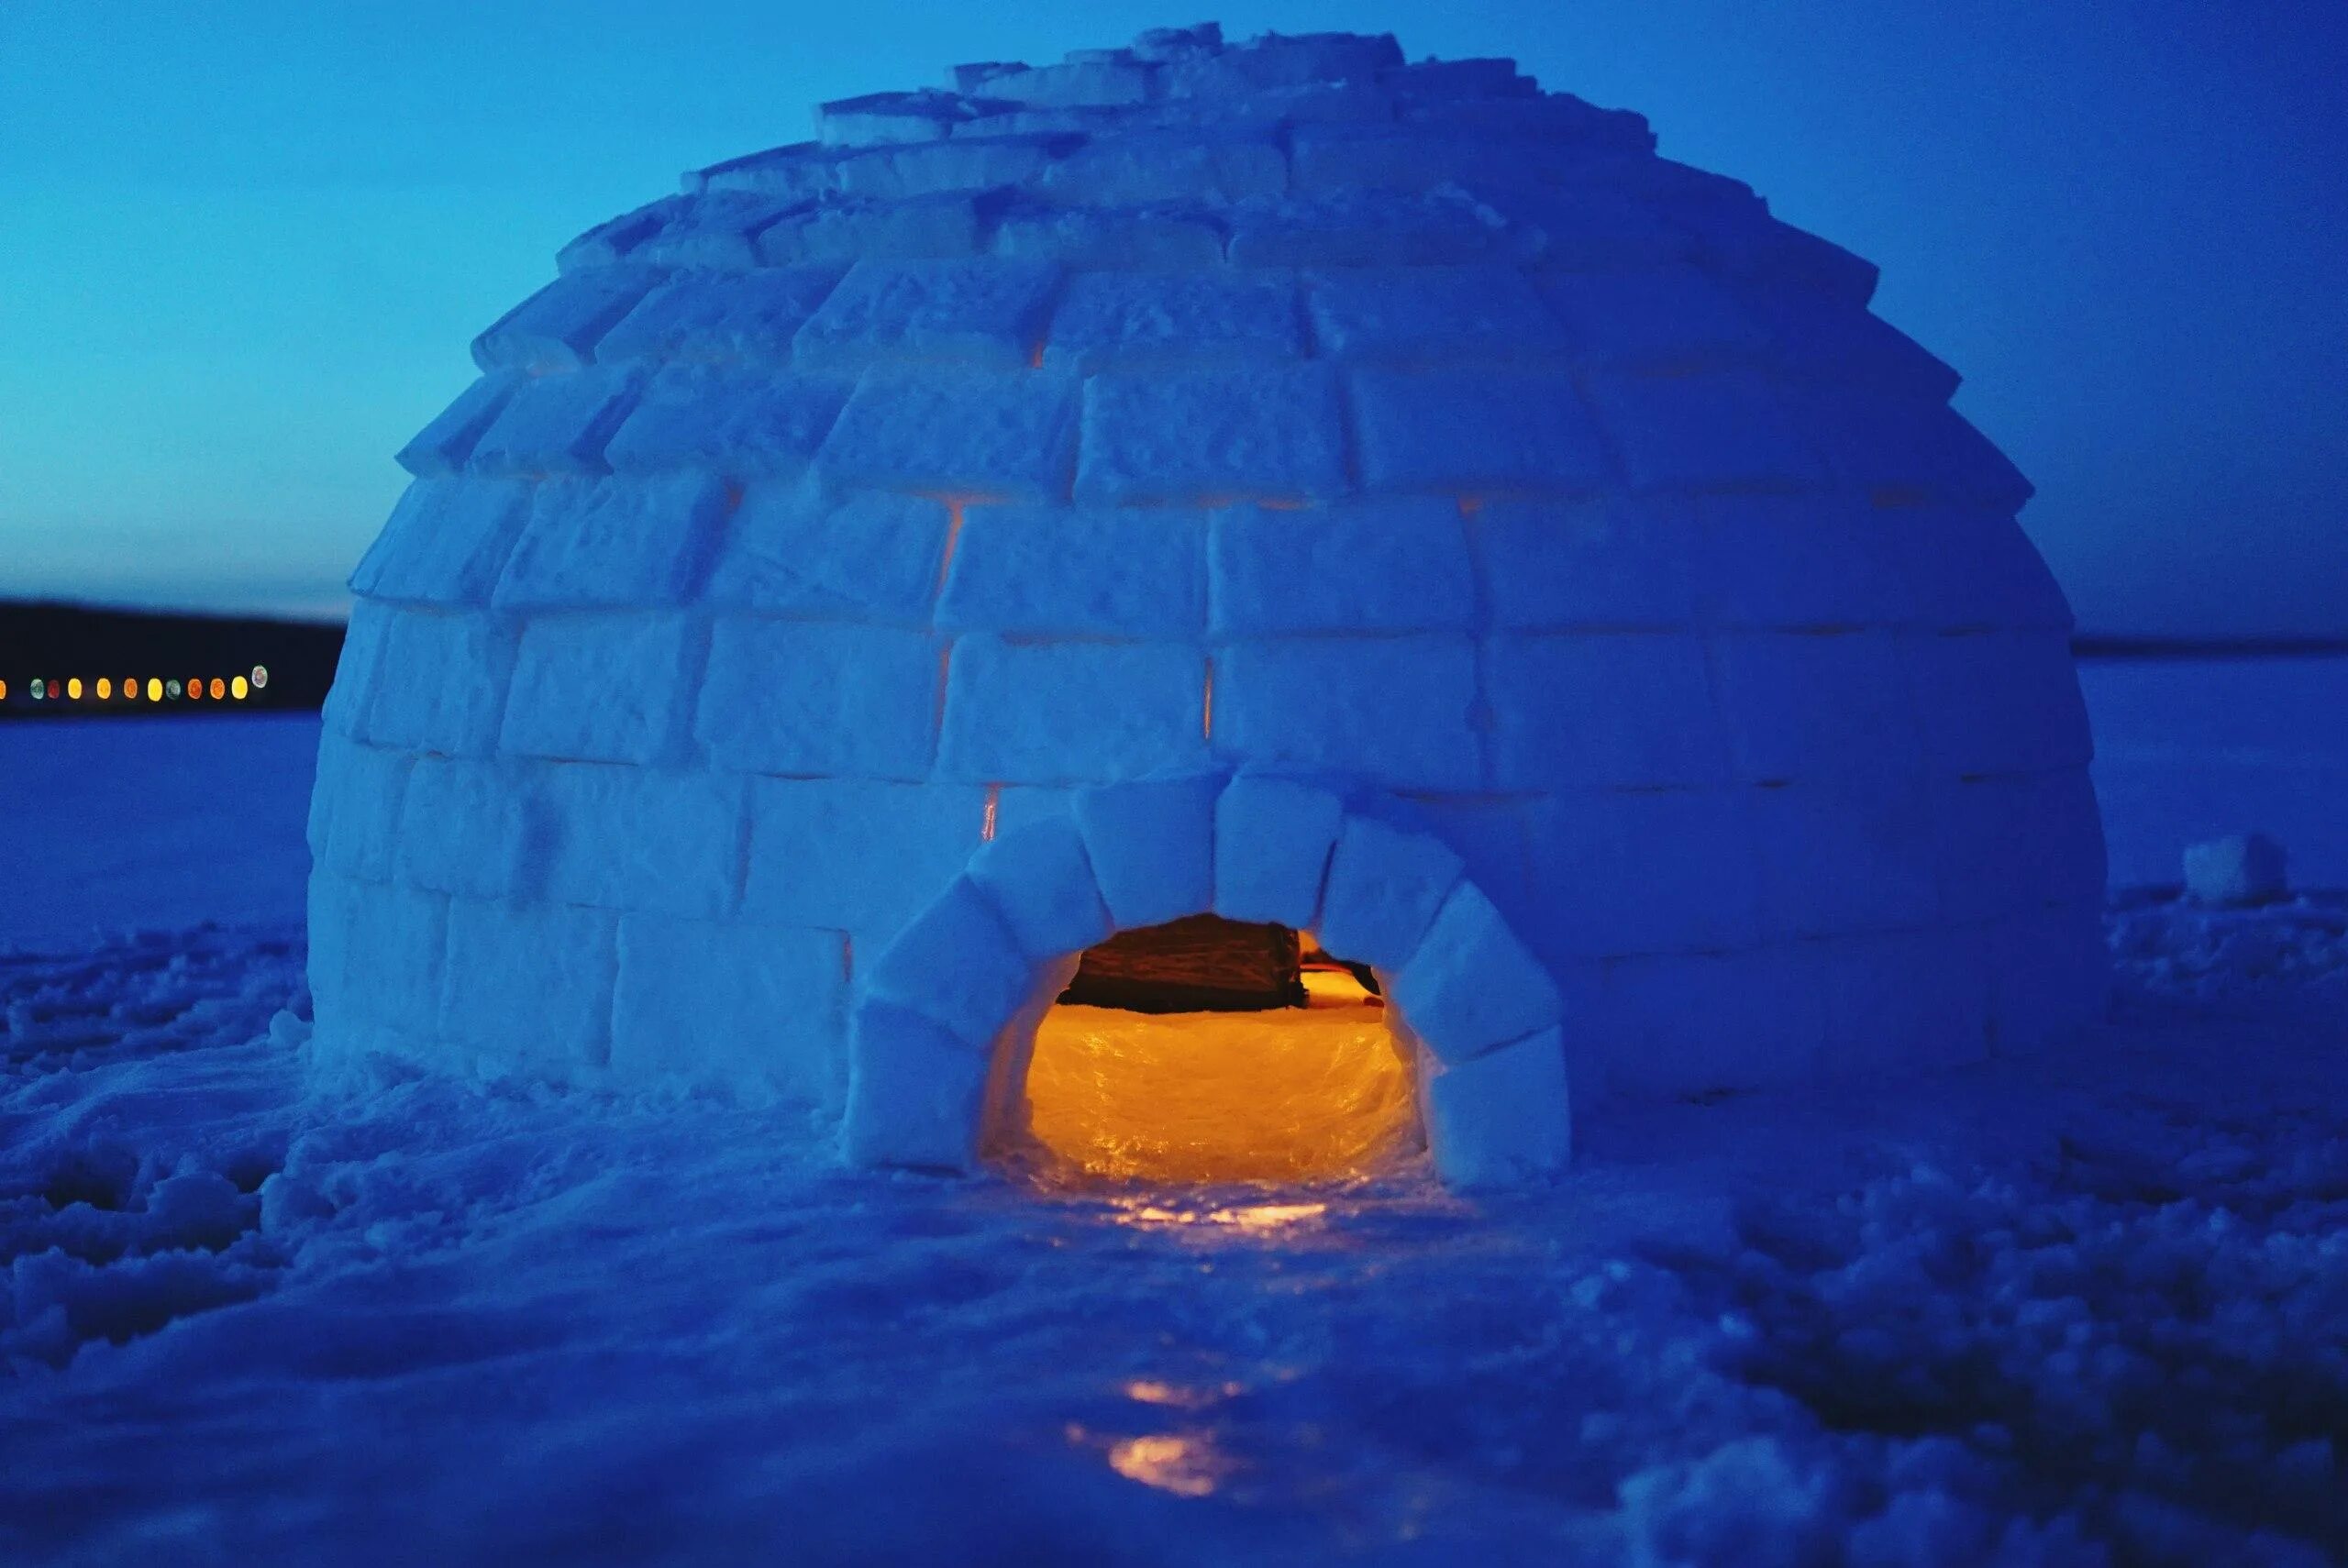 Температура в иглу. Иглу жилище эскимосов. Иглу - снежный дом эскимосов. Иглу зимнее жилище эскимосов. Иглу домик эскимоса.